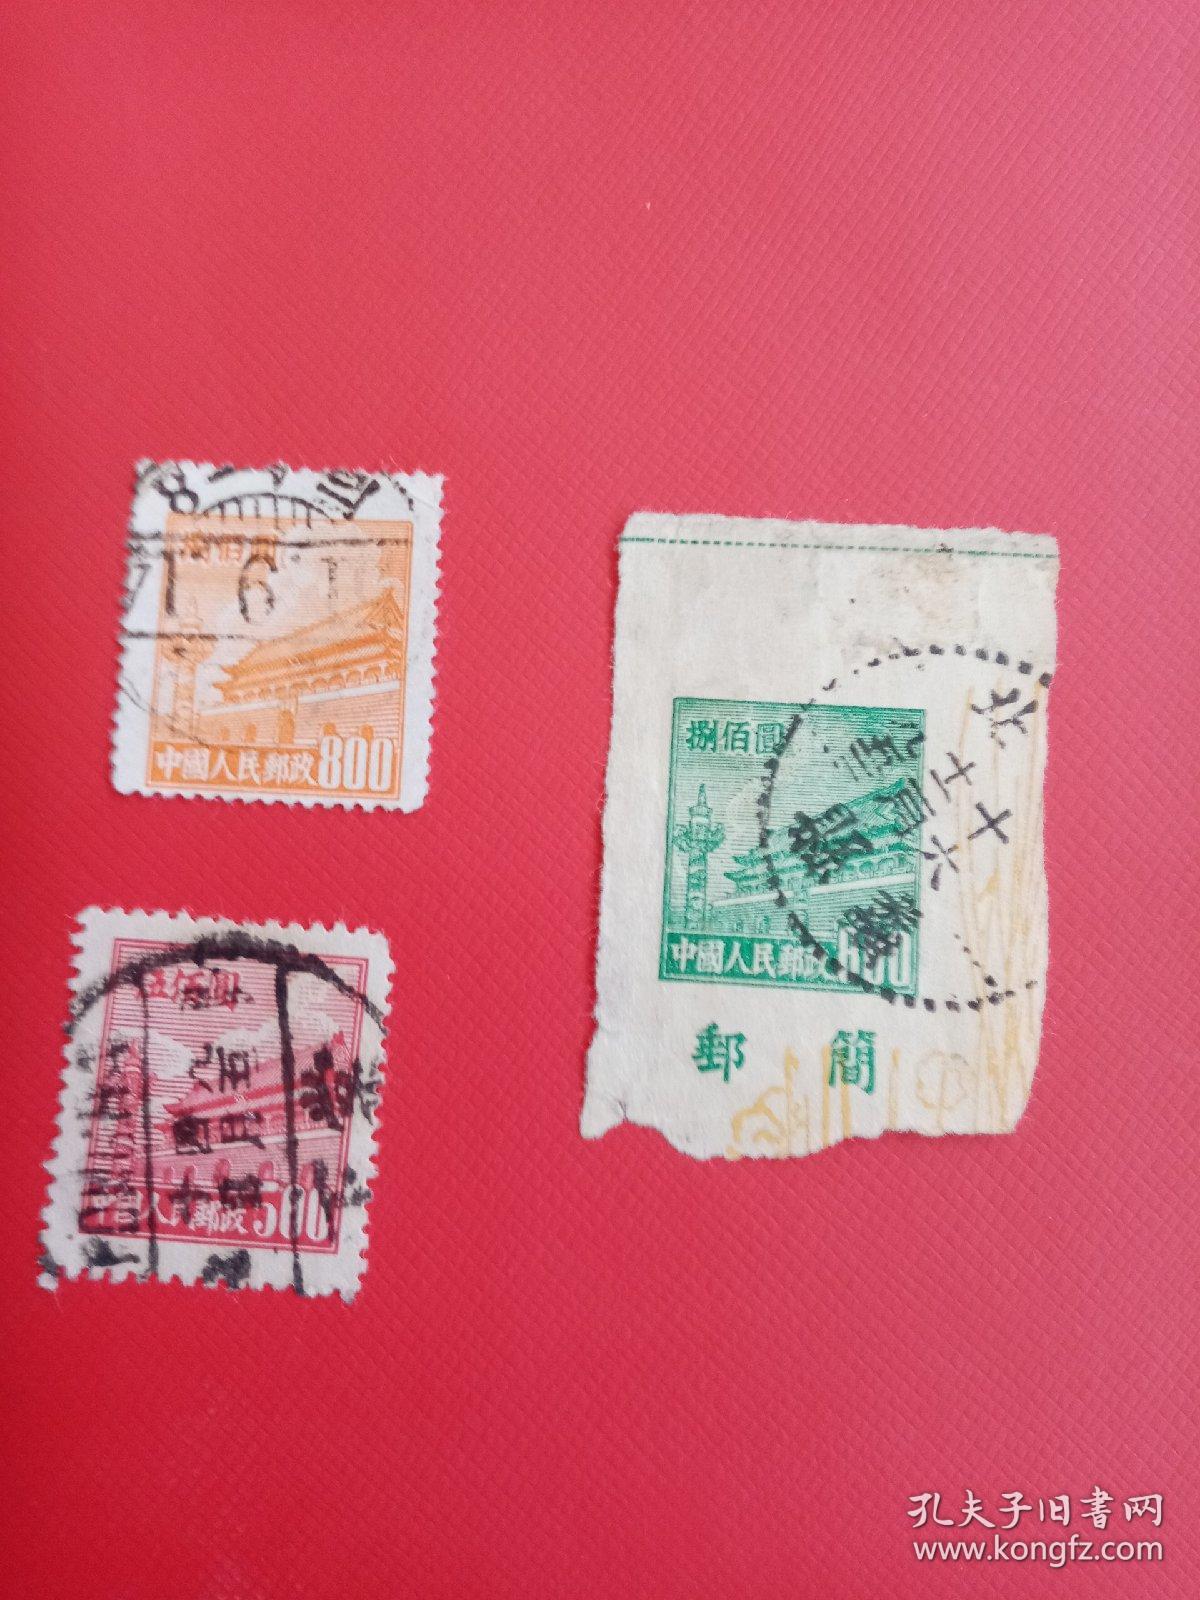 中国人民邮政捌佰圆邮票两枚伍佰圆邮票一枚。